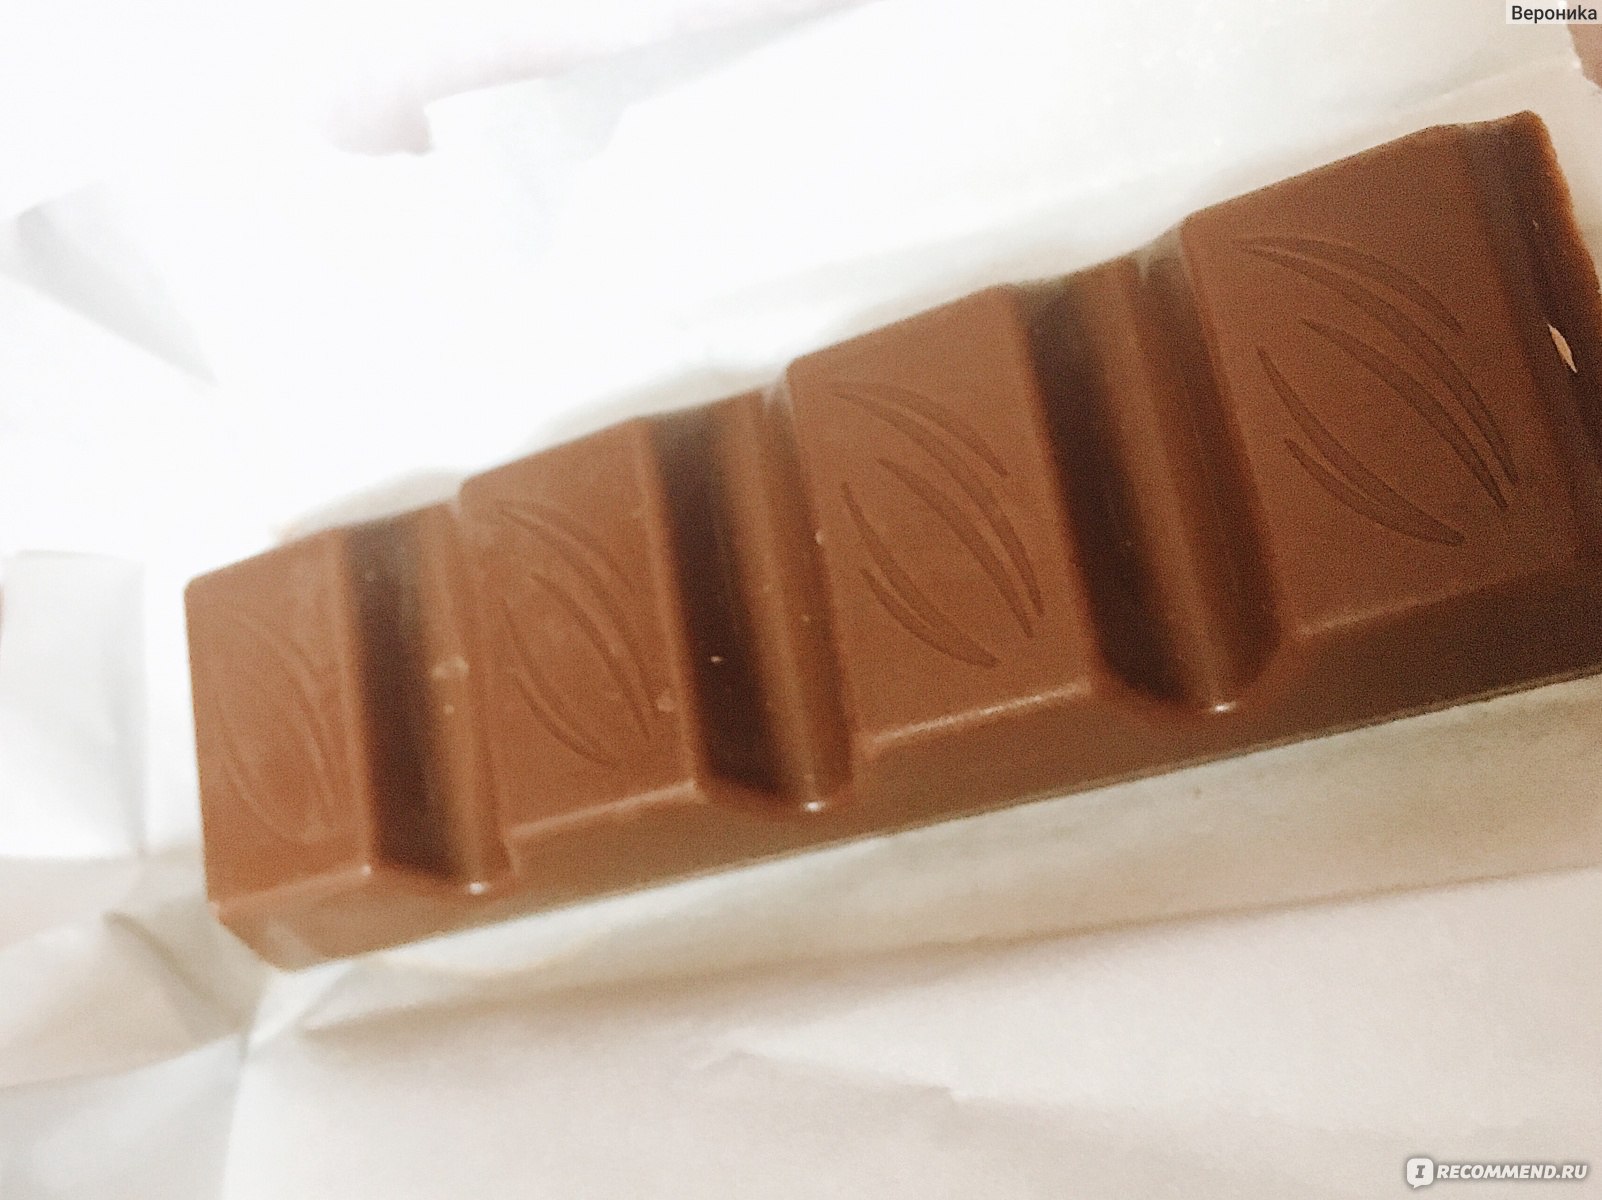 Шоколадные батончики в белой упаковке